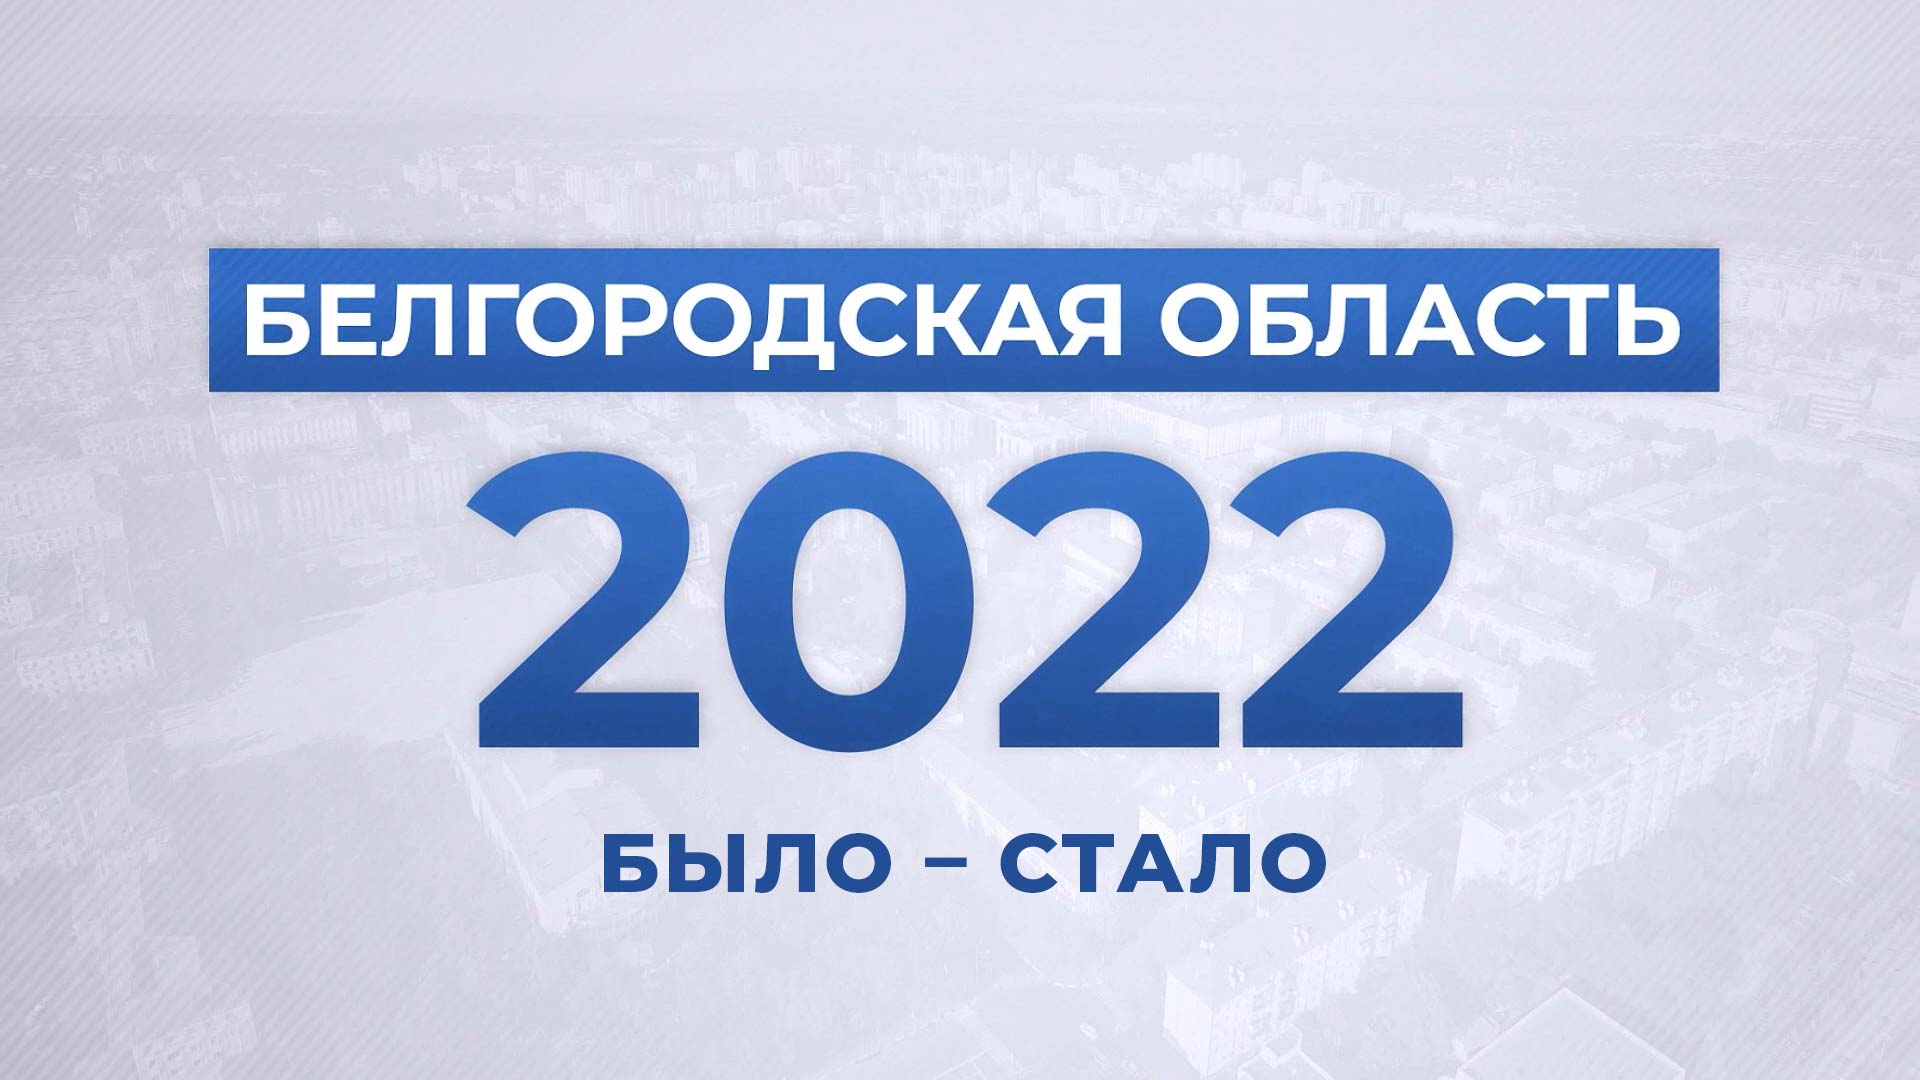 Белгородская область – 2022. Было – Стало